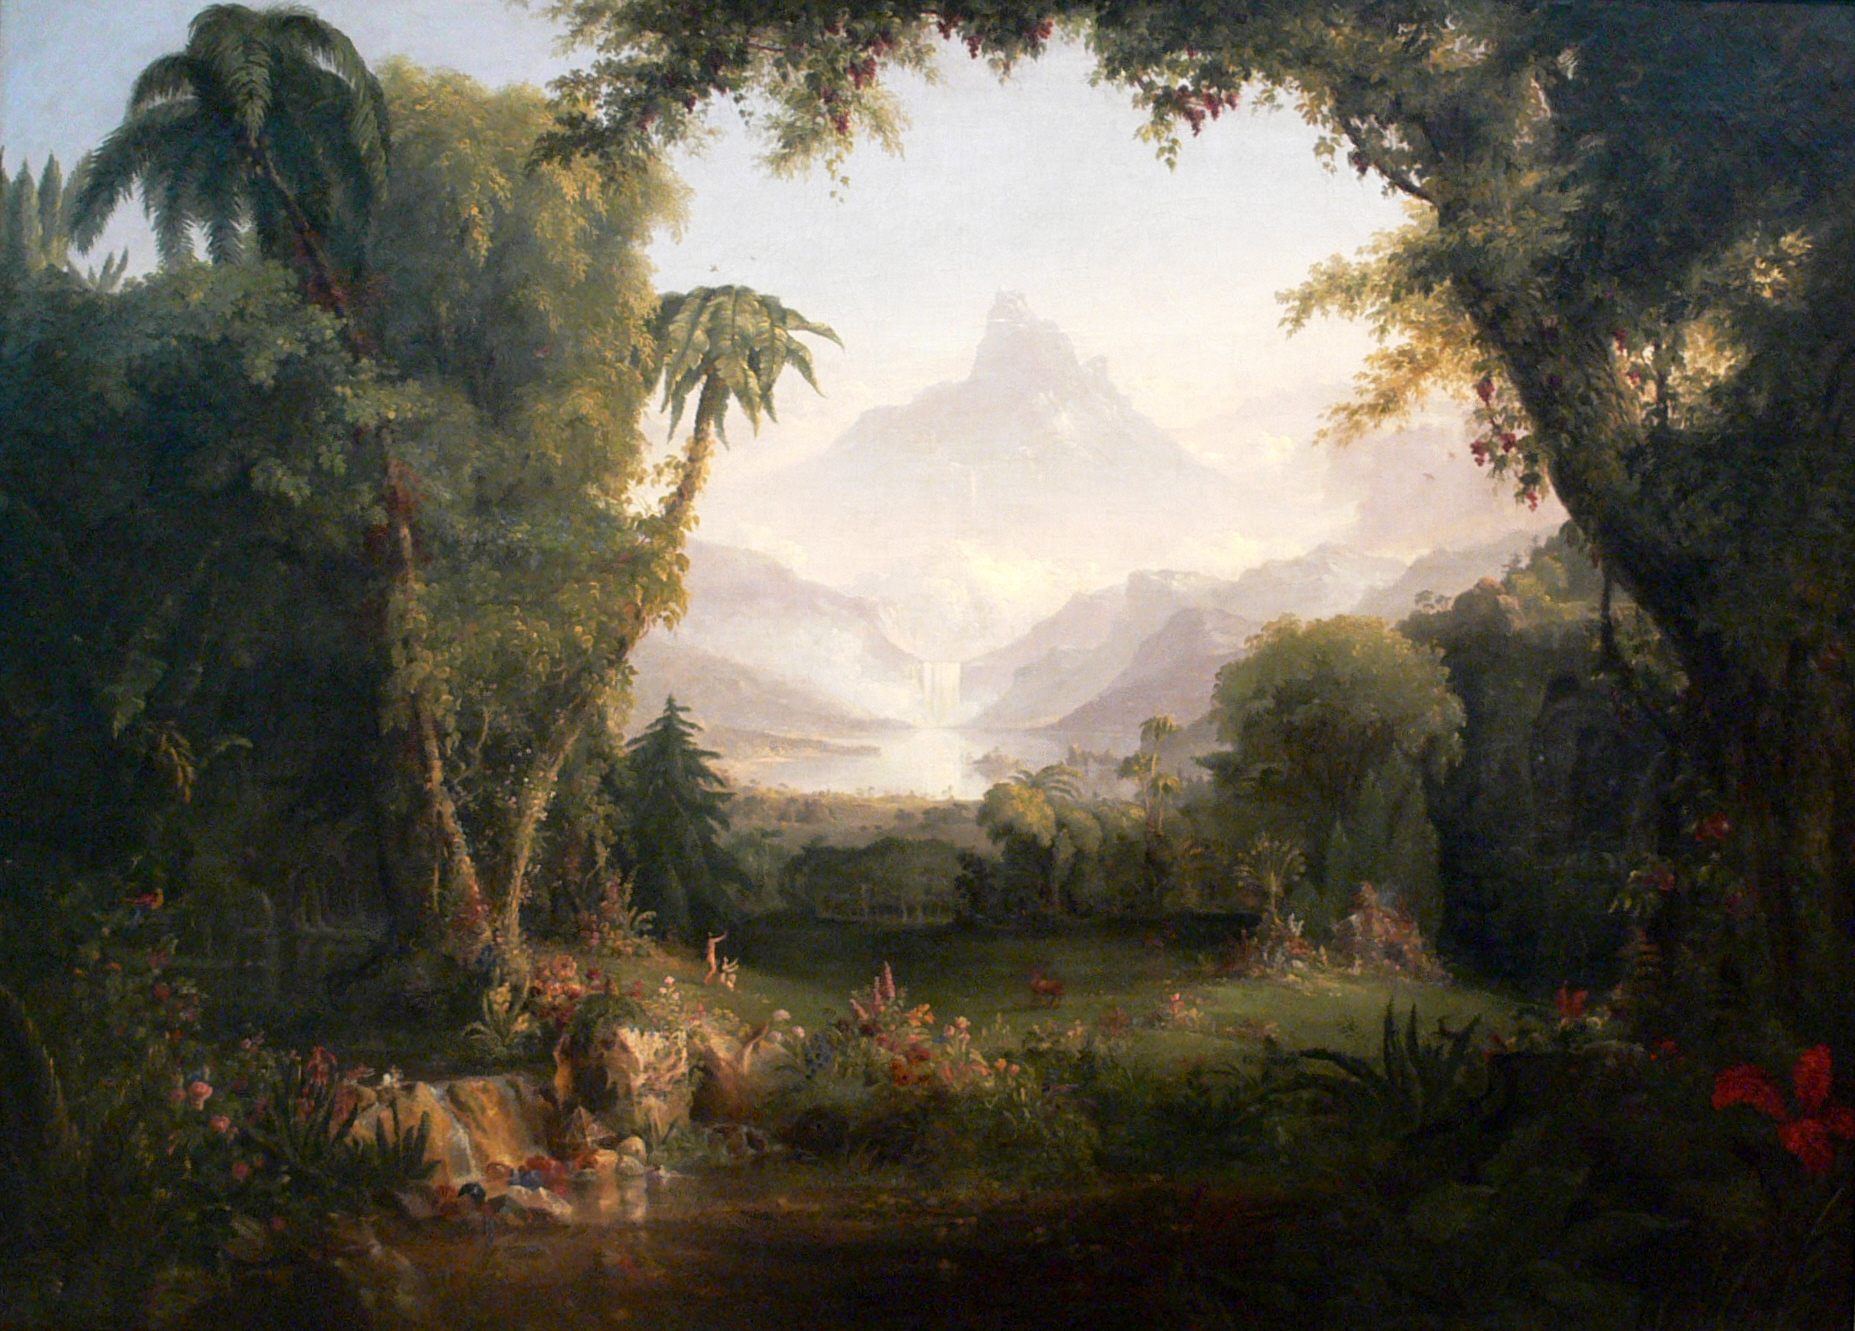 The Garden of Eden, Thomas Cole (1801-1848) English-born American painter